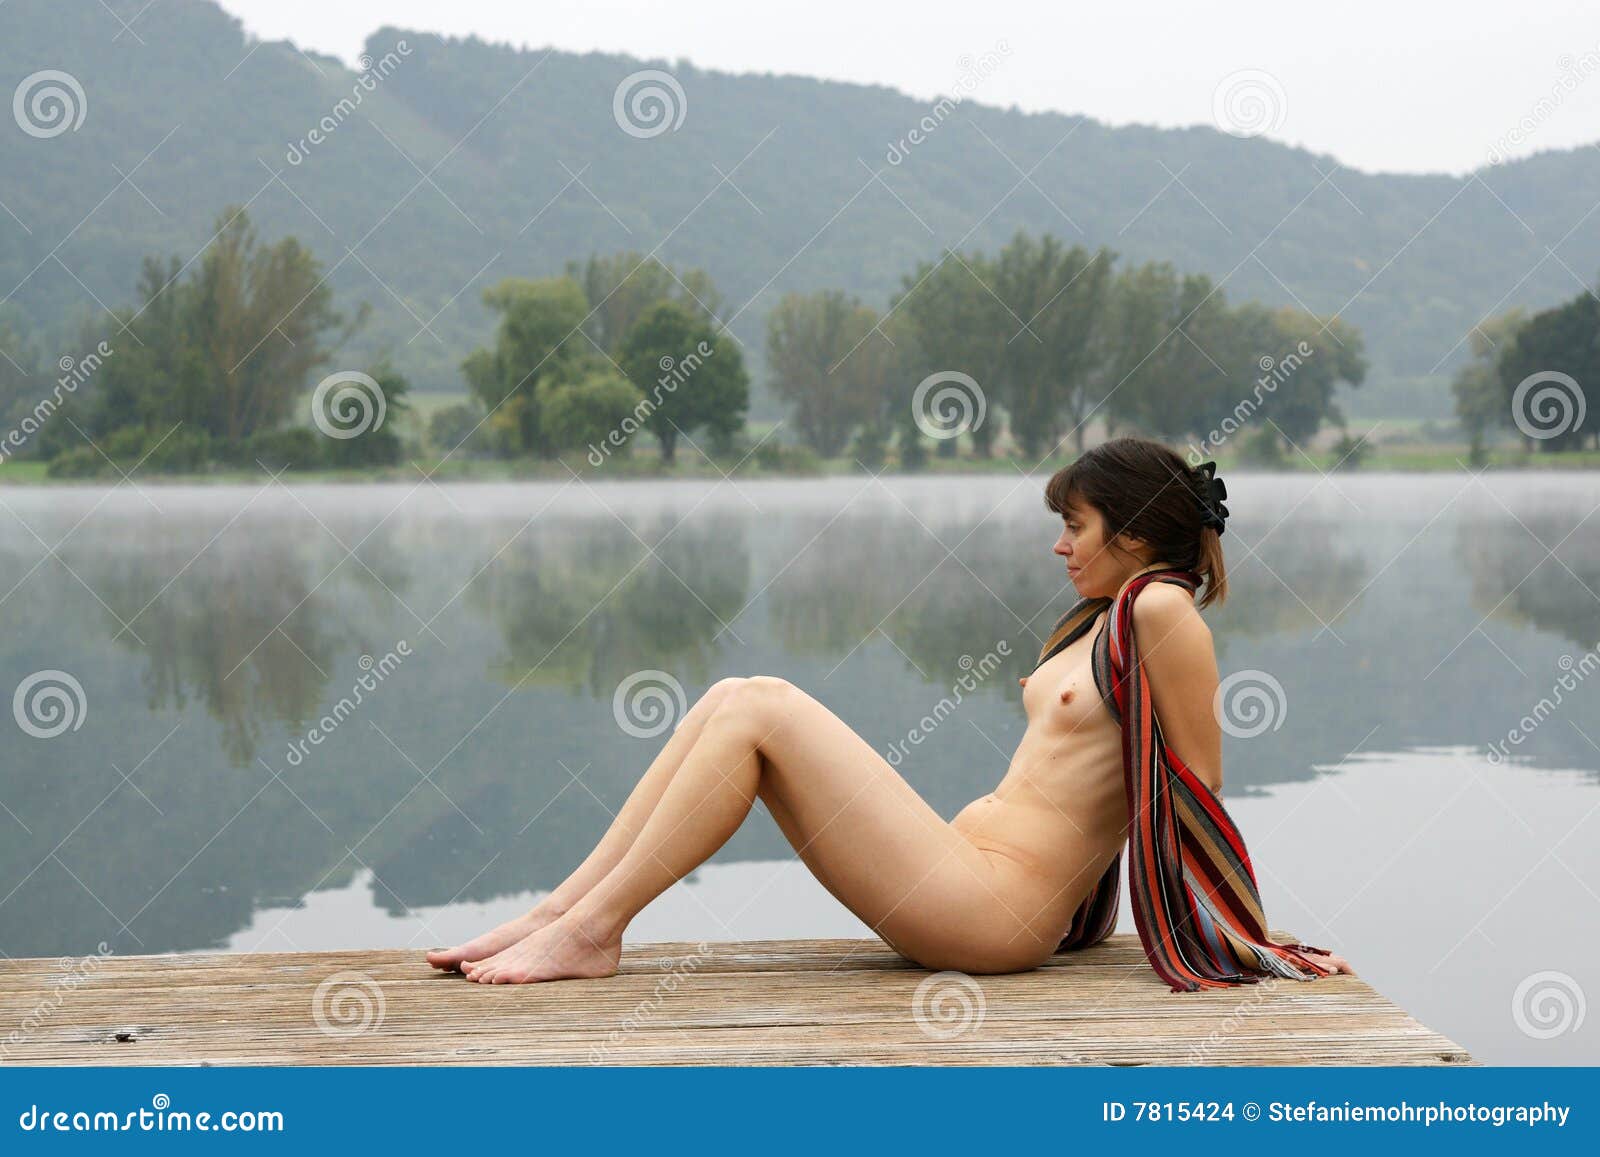 Nude in lake